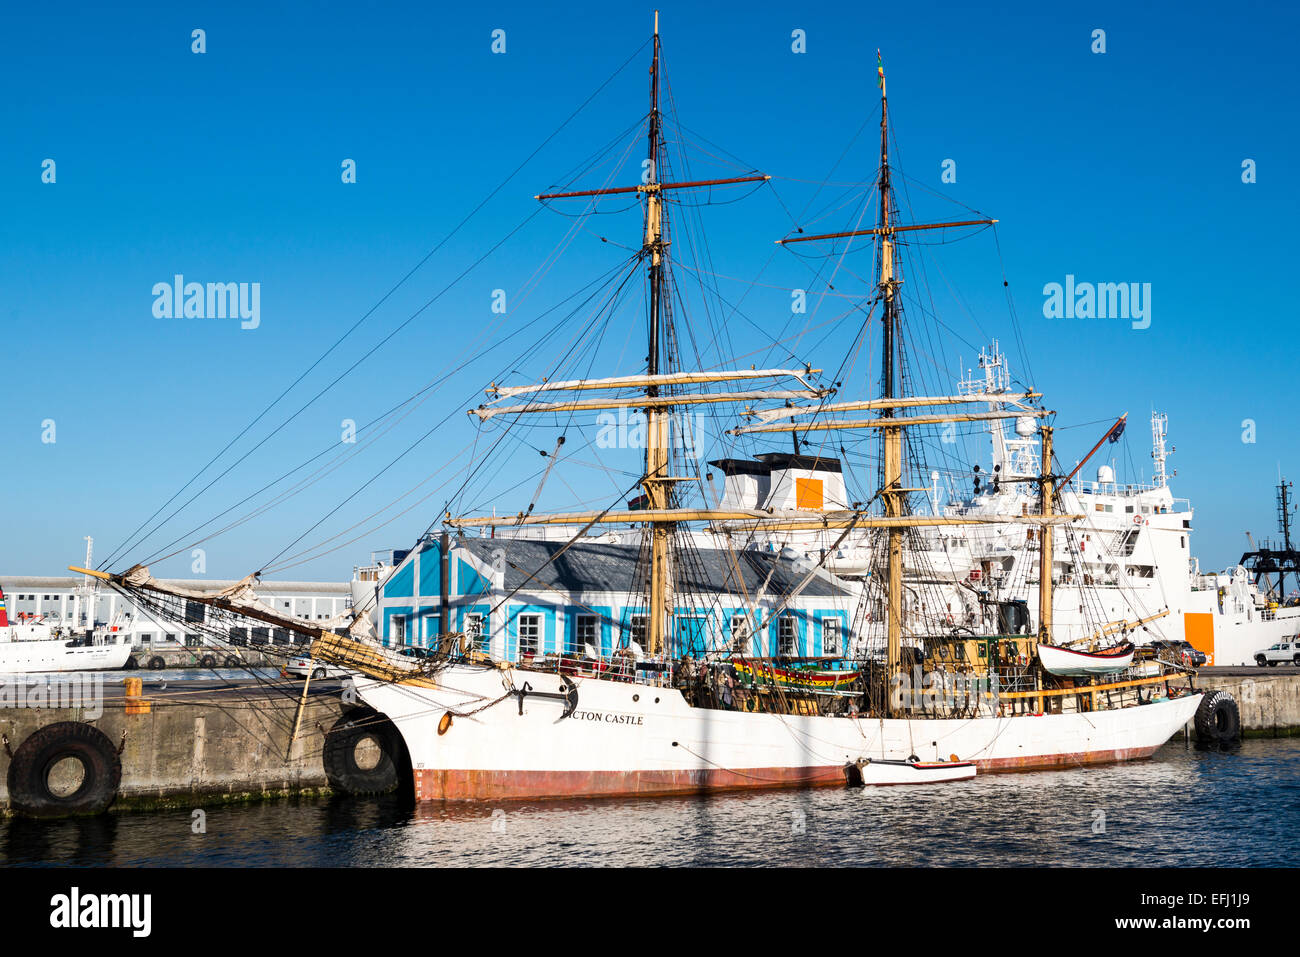 Il castello di Picton, una tre-masted tall addestramento alla vela di nave al molo, Cape Town, Sud Africa Foto Stock